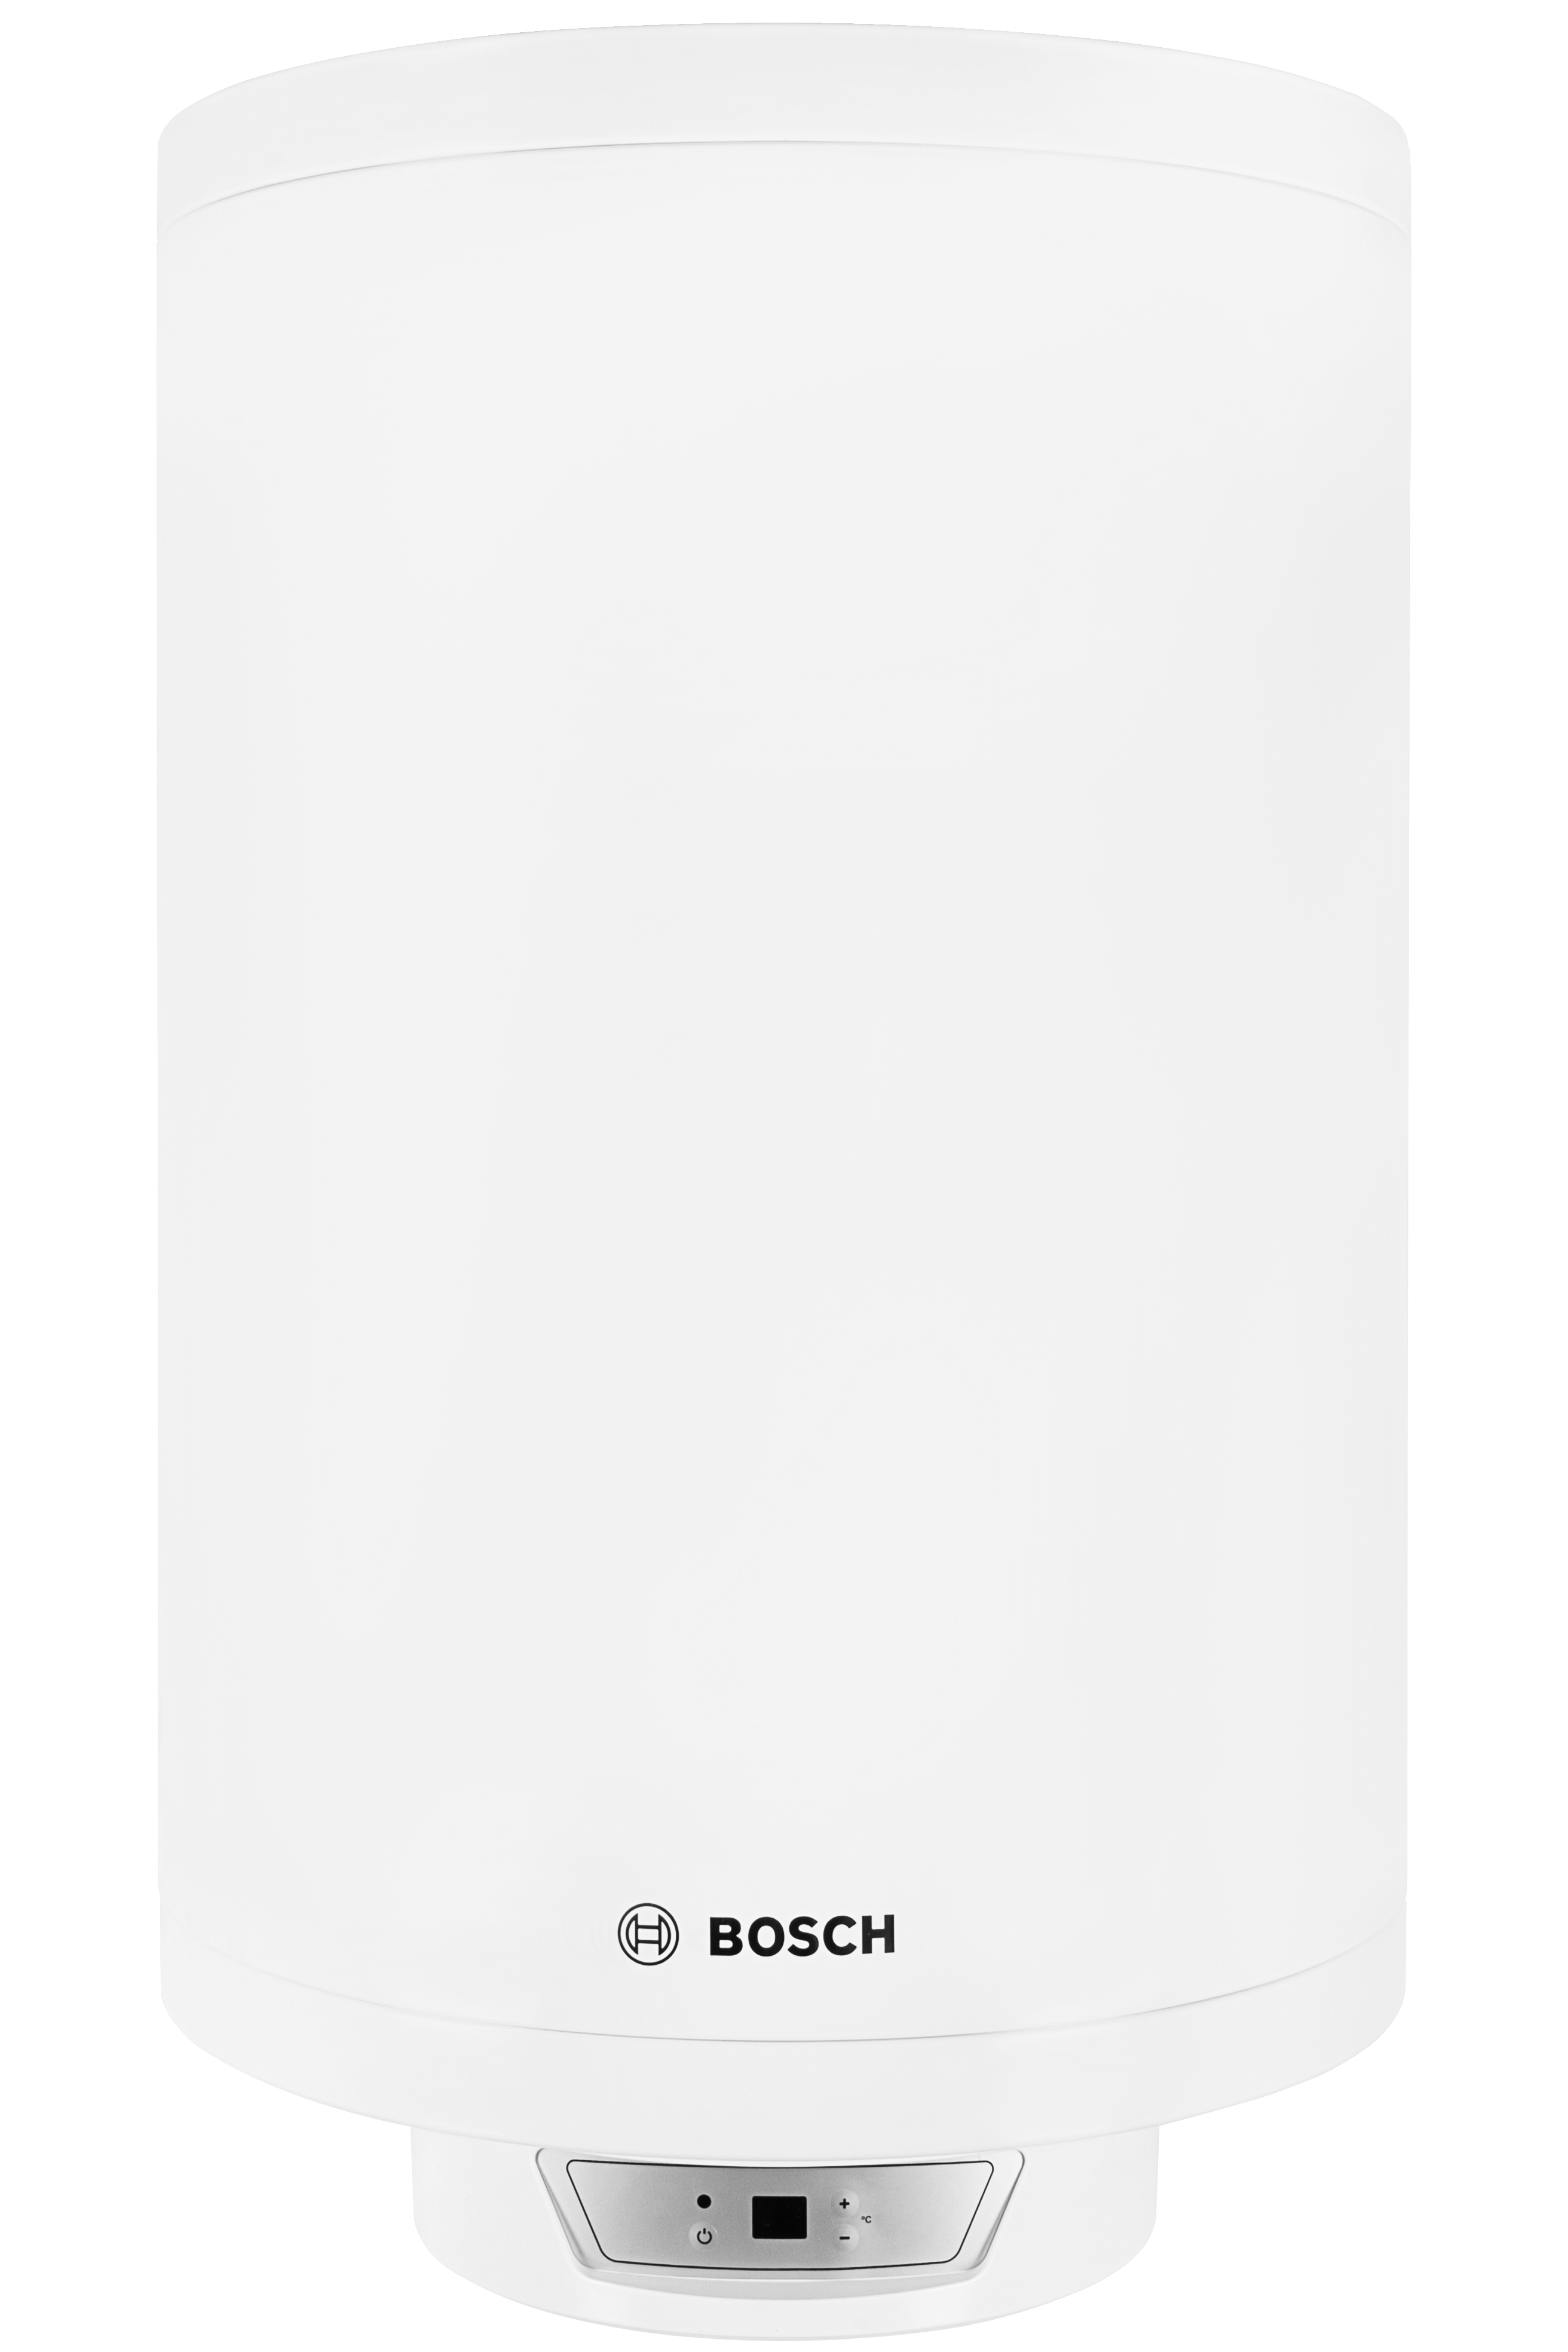 Отзывы горизонтальный бойлер Bosch Tronic 8000T ES 080-5 2000W BO H1X-EDWRB (7736503147) в Украине